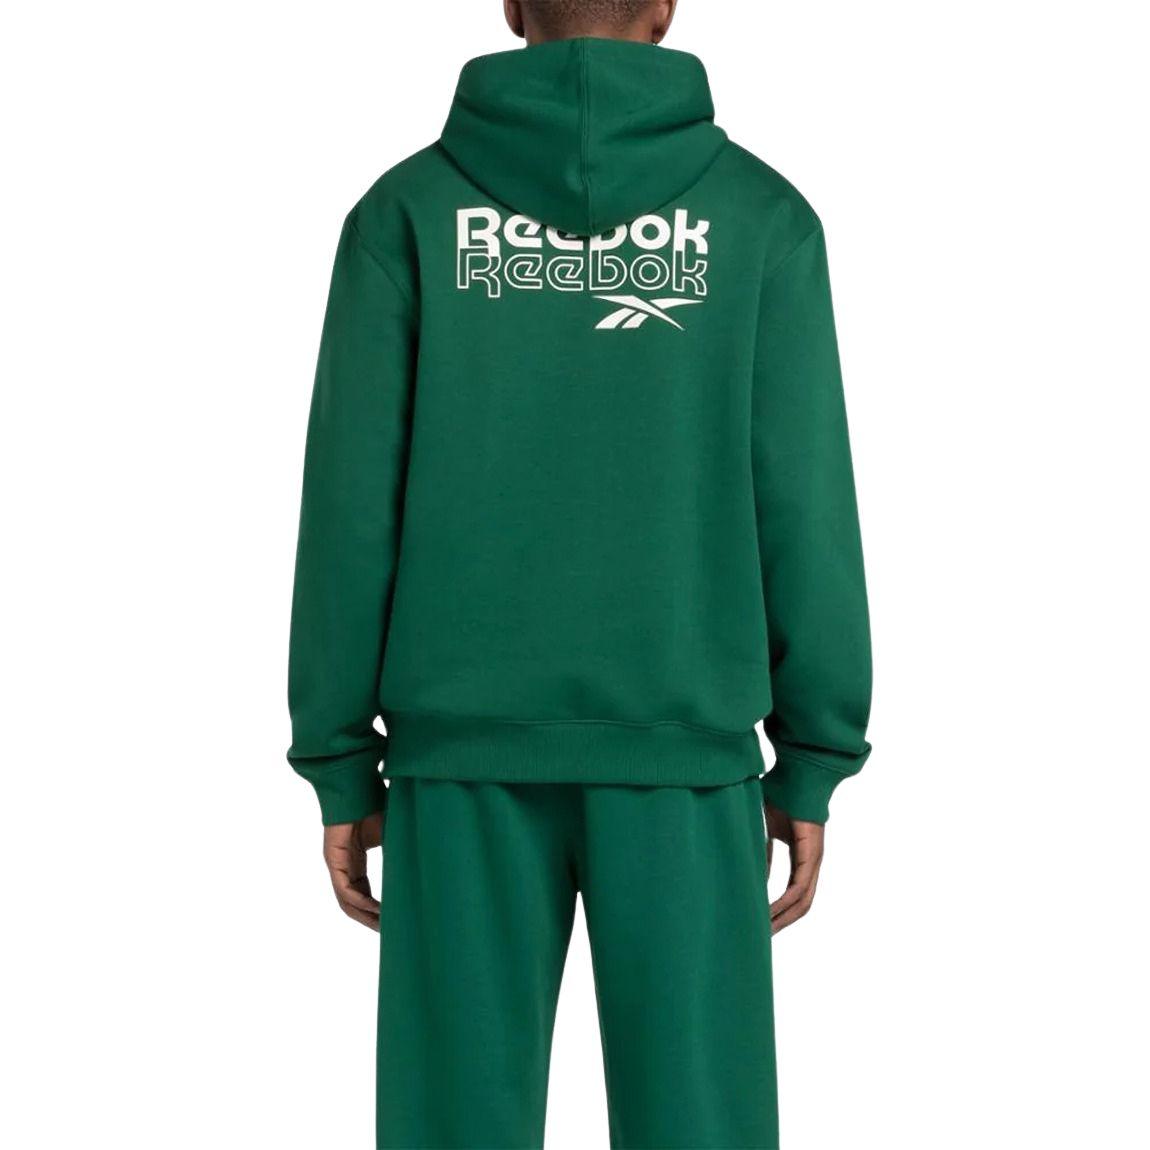 Reebok Identity Brand Proud Hoodie - Men